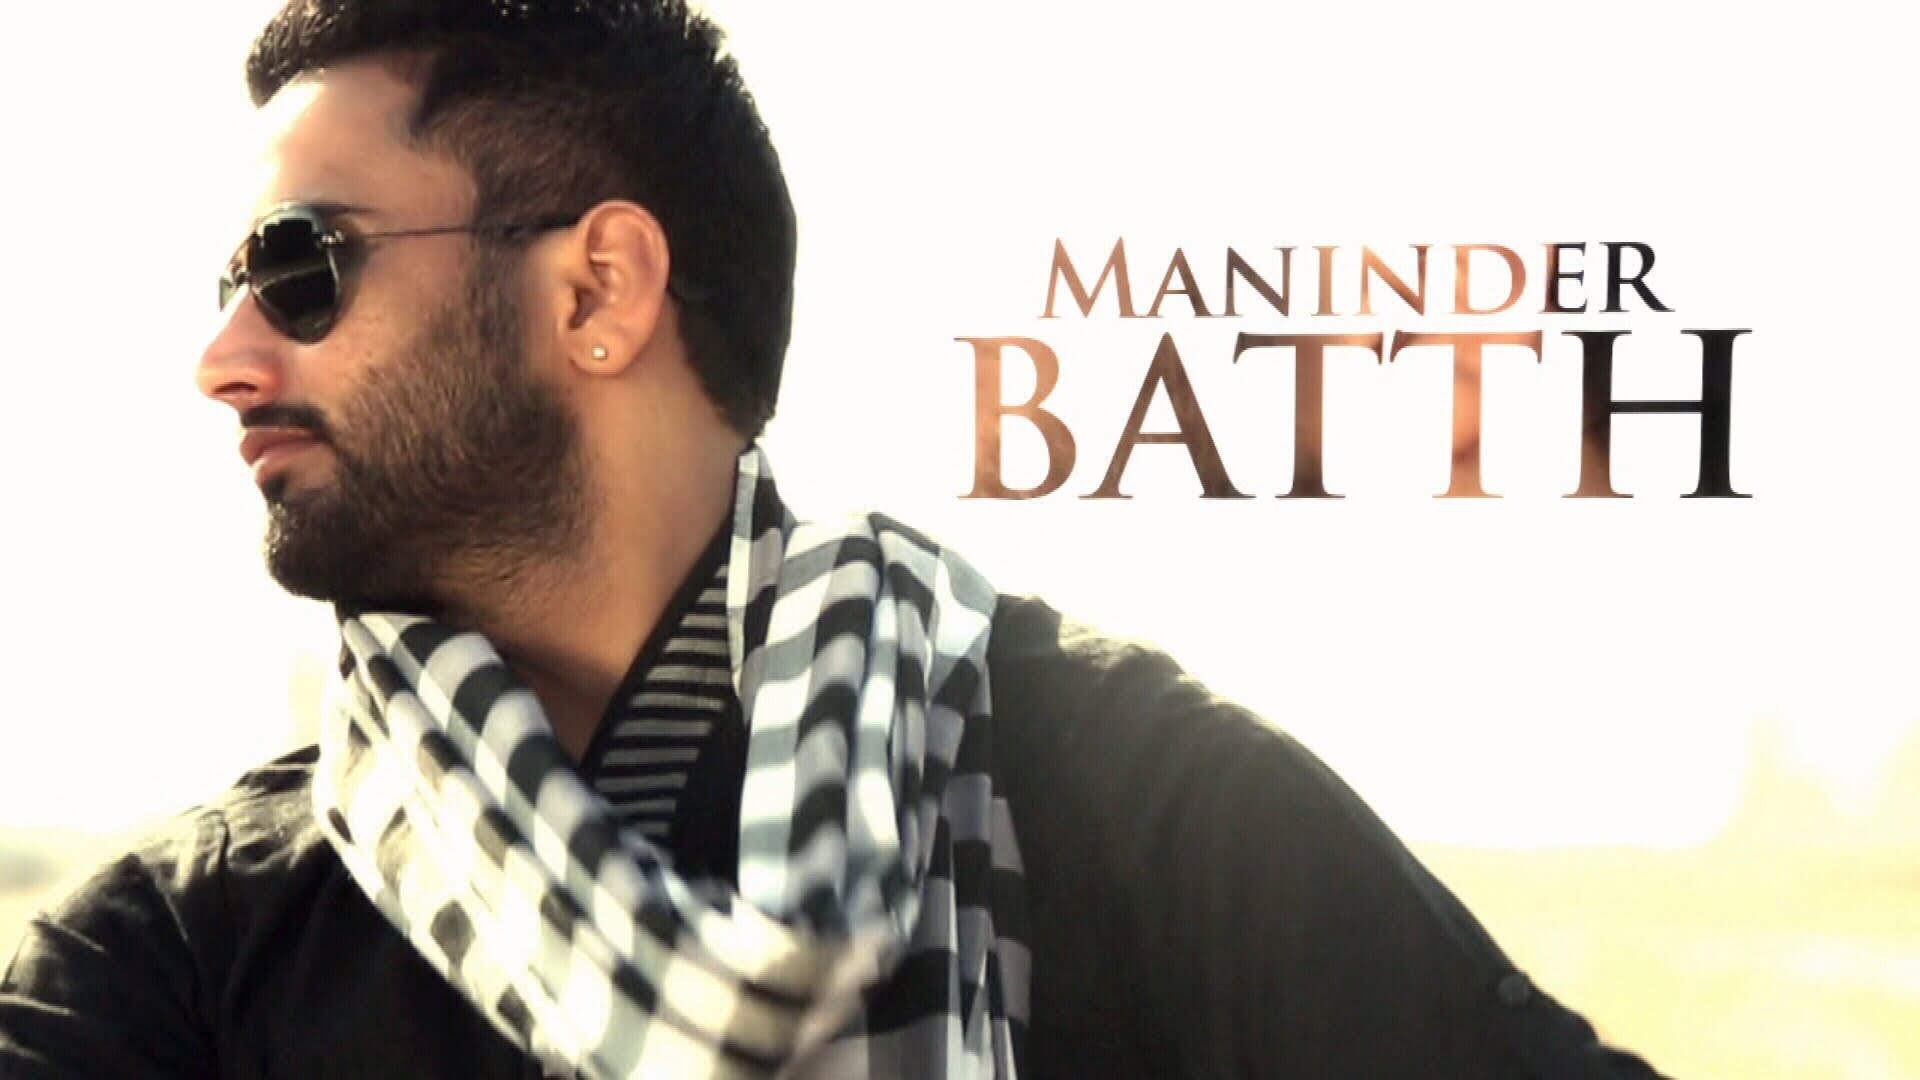 Maninder Batth Singer